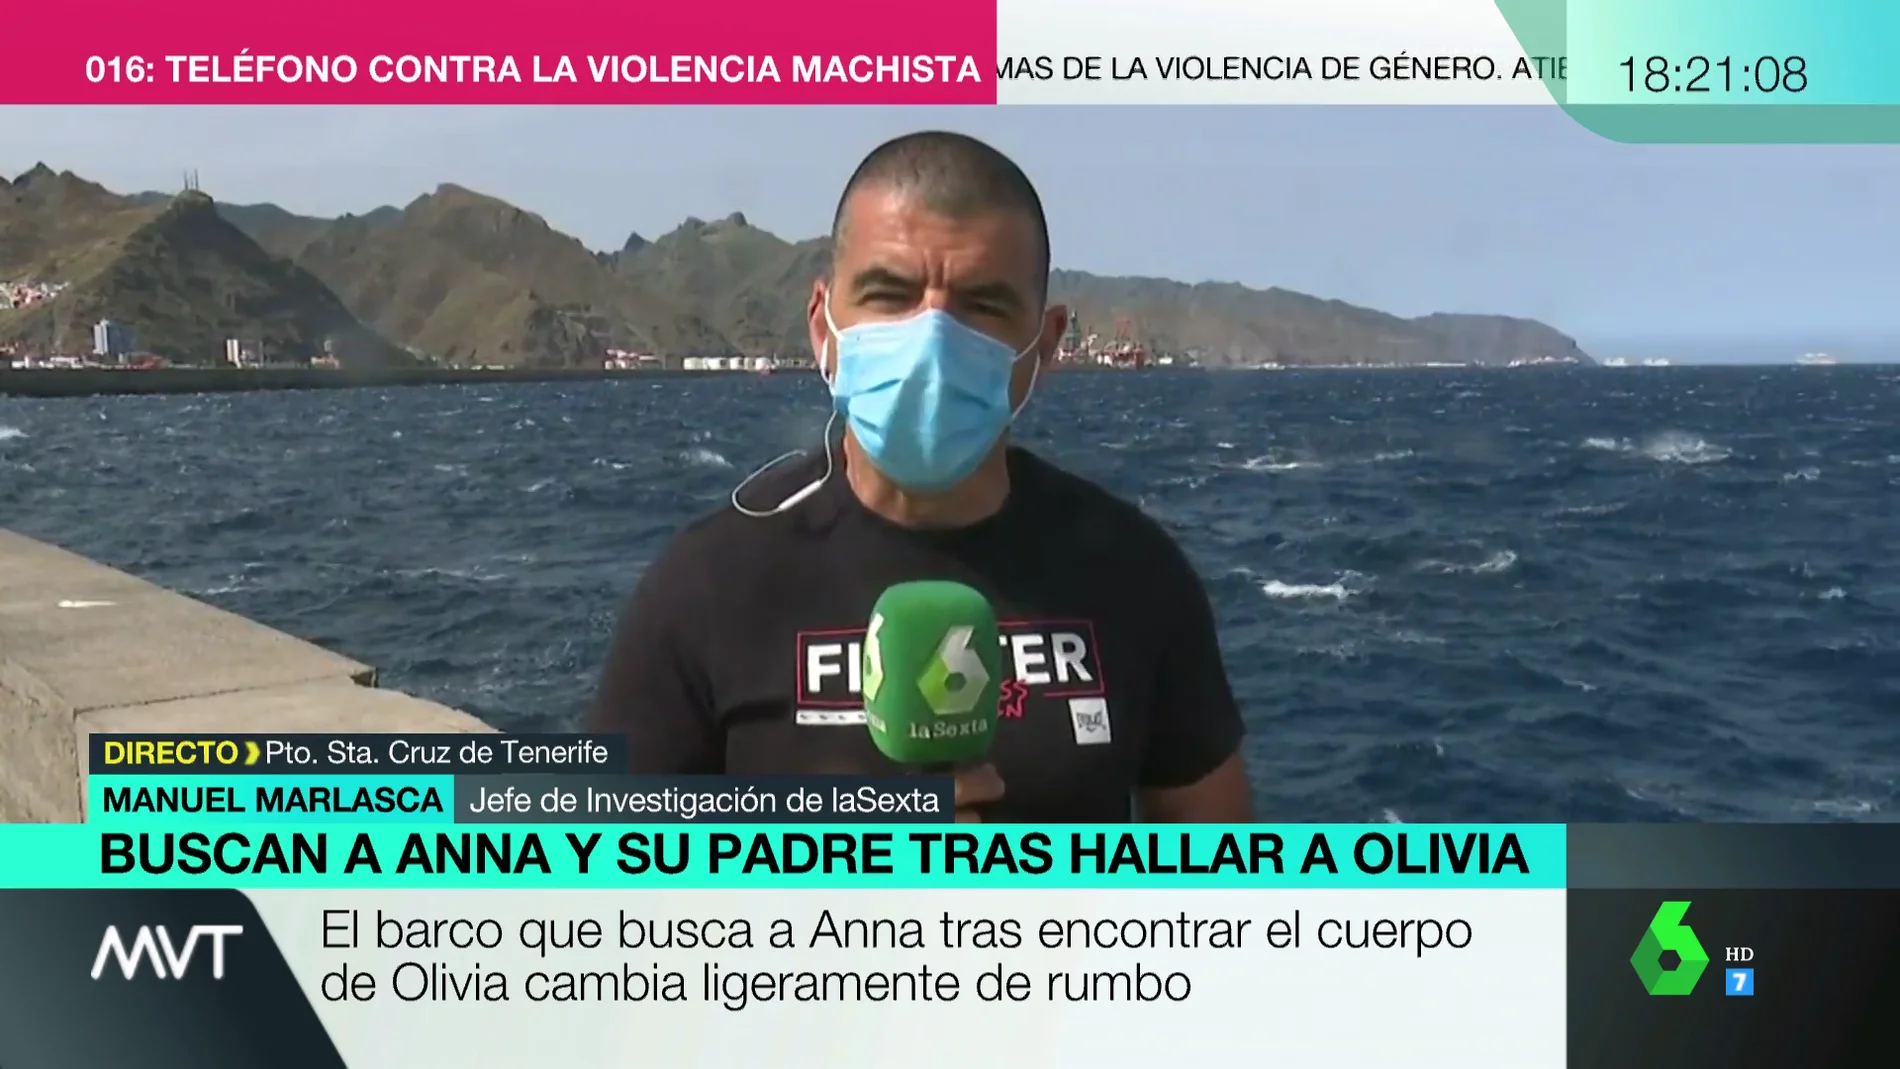 Manuel Marlasca: "La hipótesis es que Gimeno se lanzó al agua lastrado con un cinturón de buceo"